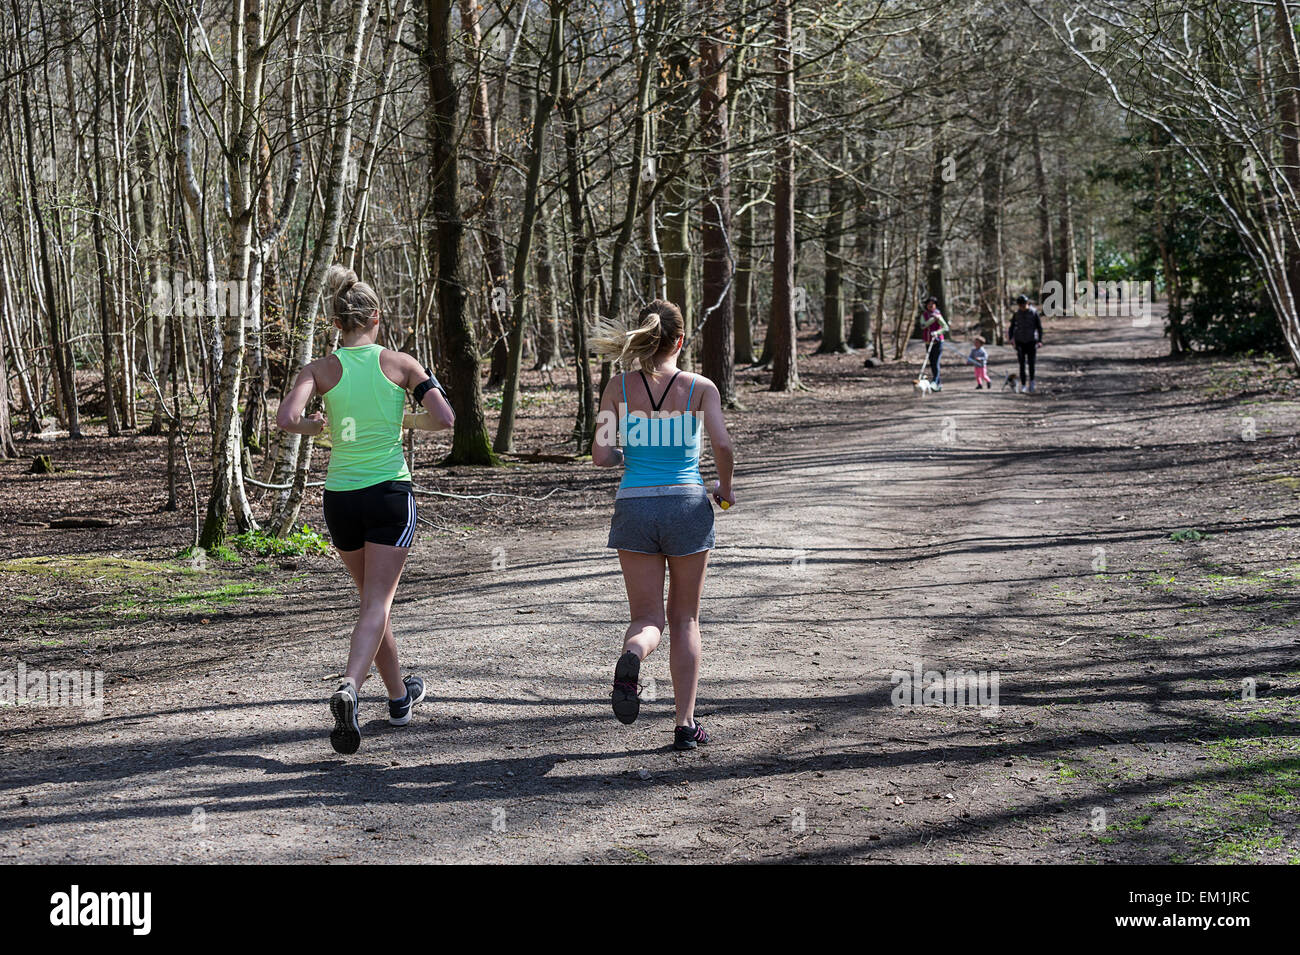 Per chi ama fare jogging nel parco Thorndon woodland, Essex Foto Stock